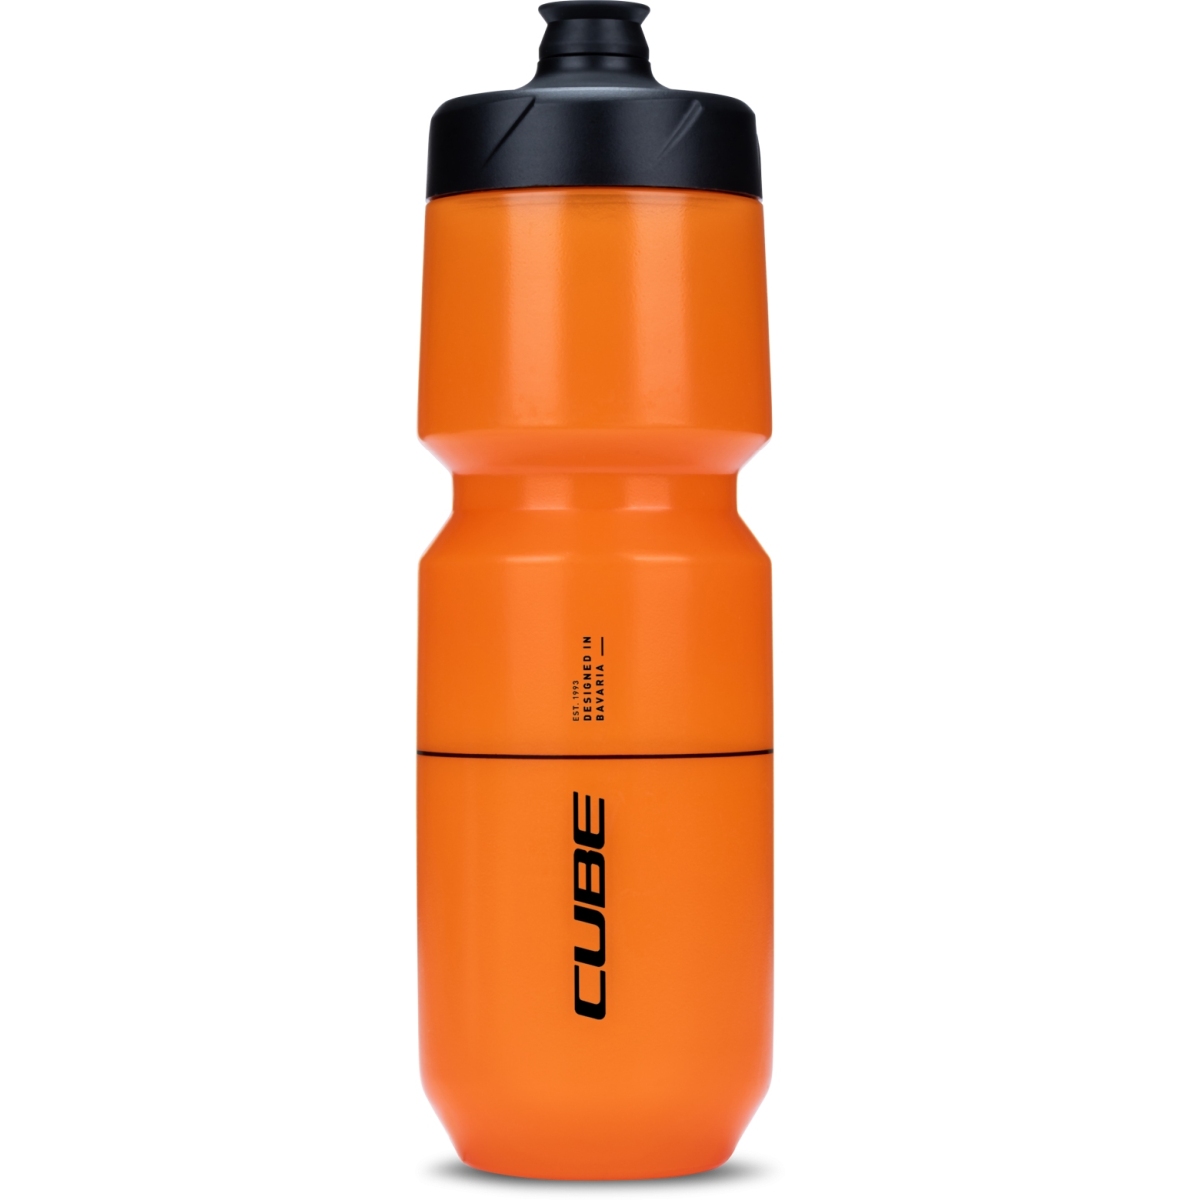 Produktbild von CUBE Flow Trinkflasche 750 - orange